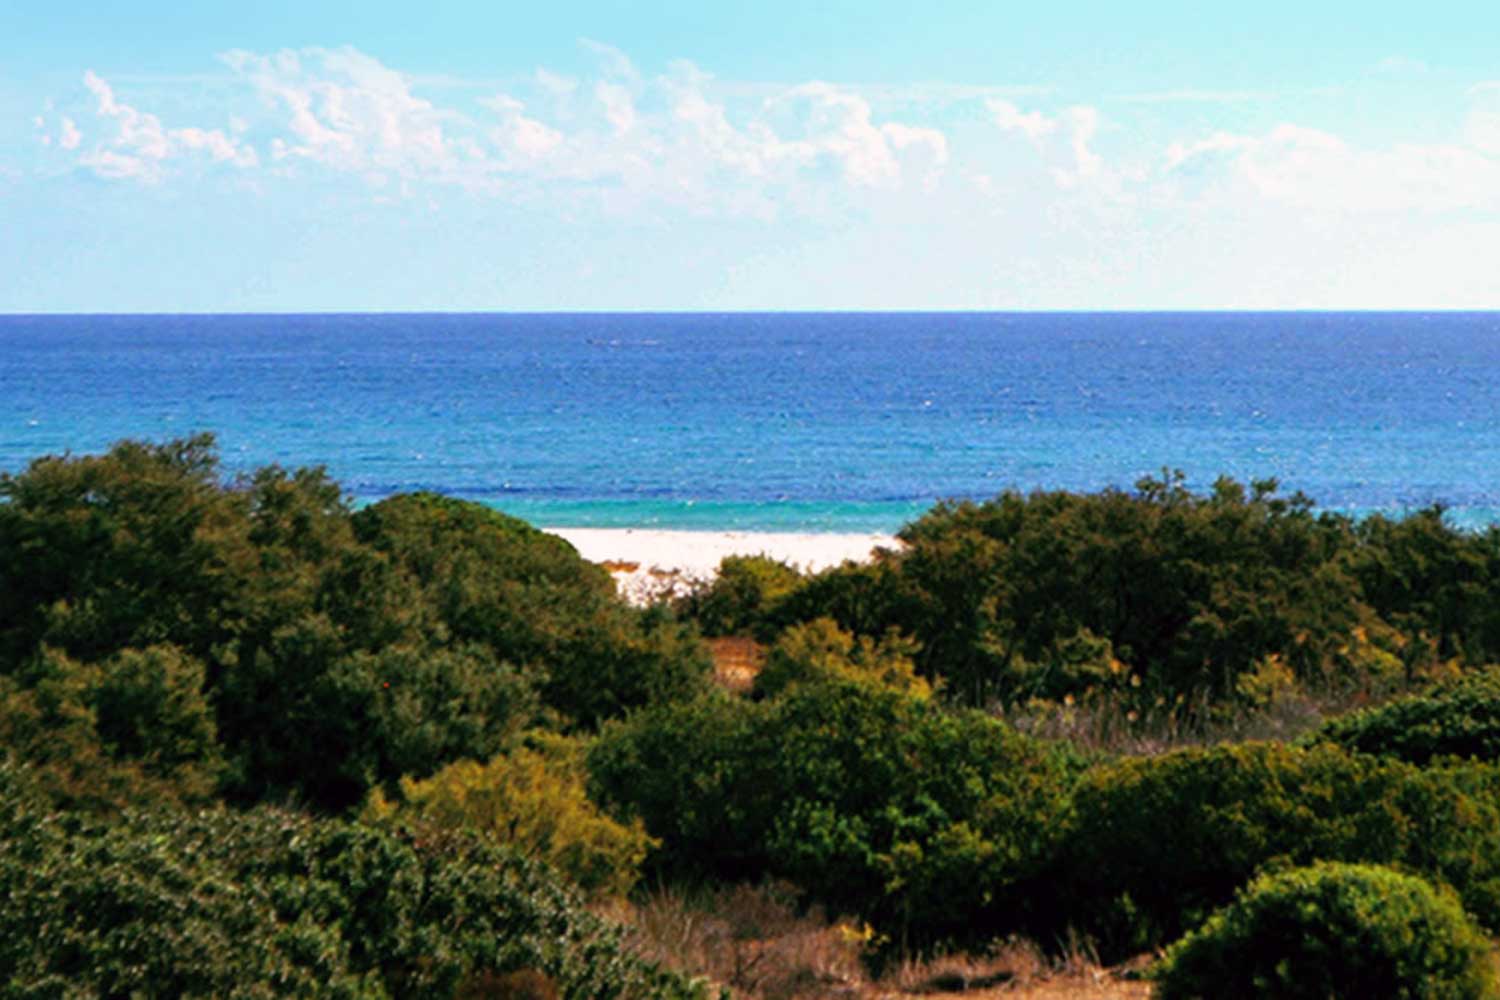 La spiaggia del Villaggio Marina Rey a Costa Rei circondata dalla fitta vegetazione mediterranea